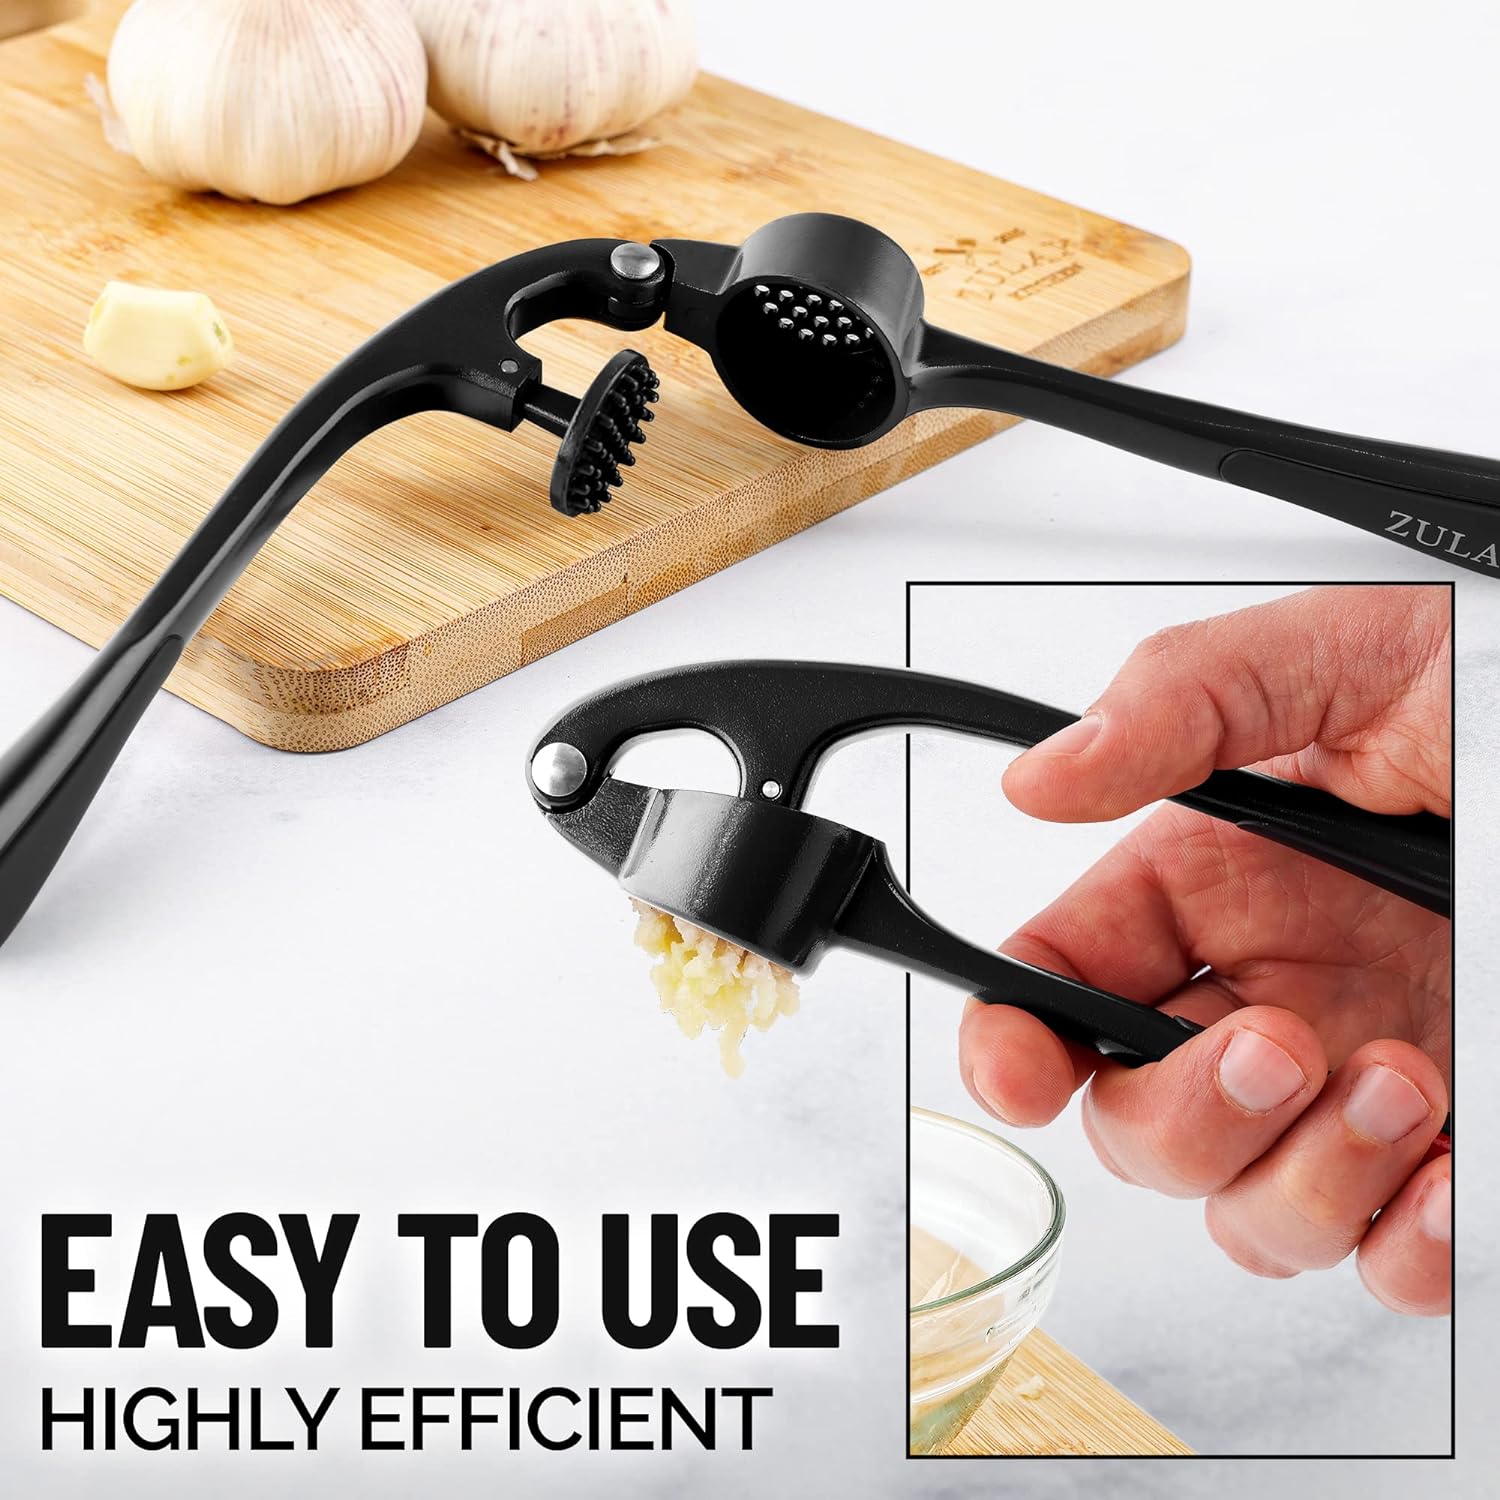 Zulay 2-in-1 Garlic Press Set Dual Function Garlic Mincer & Slicer - Garlic Crusher with Cleaning Brush & Silicone Garlic Tube Peeler